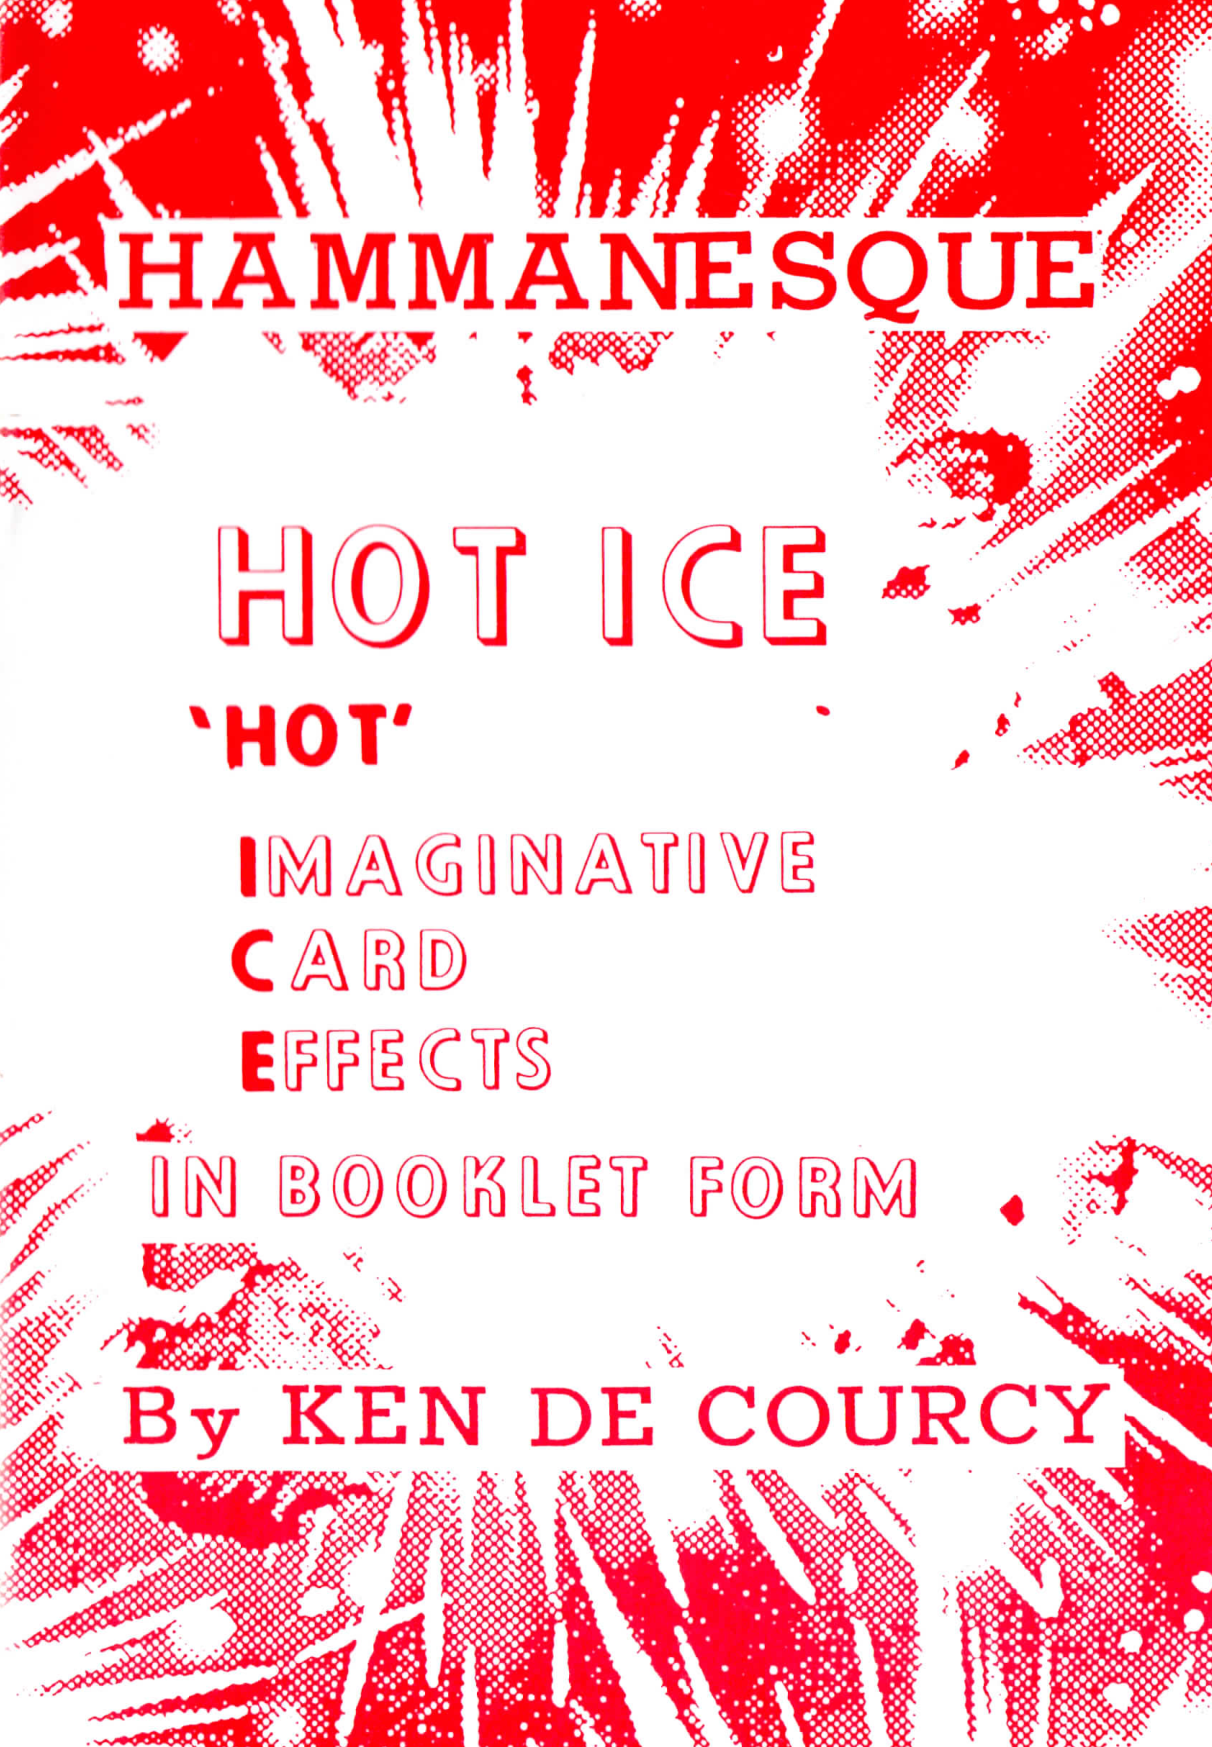 Ken de Courcy - Hot Ice 2